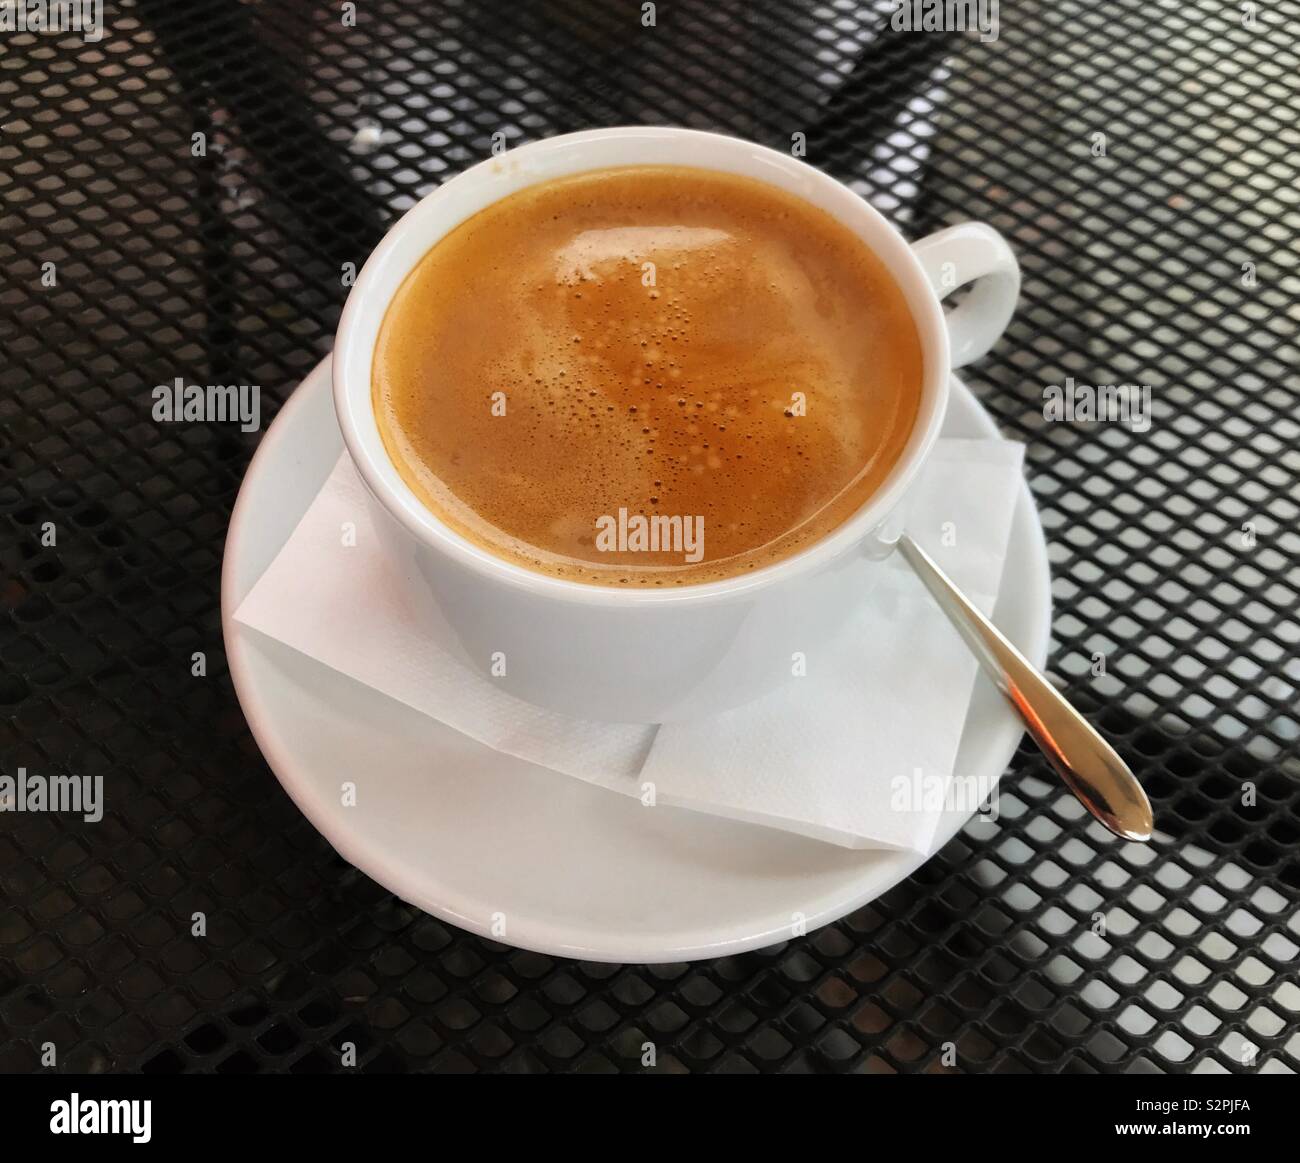 Tasse de café chaud dans une tasse et soucoupe en noir sur un treillis de métal de la table dans un café en plein air Banque D'Images